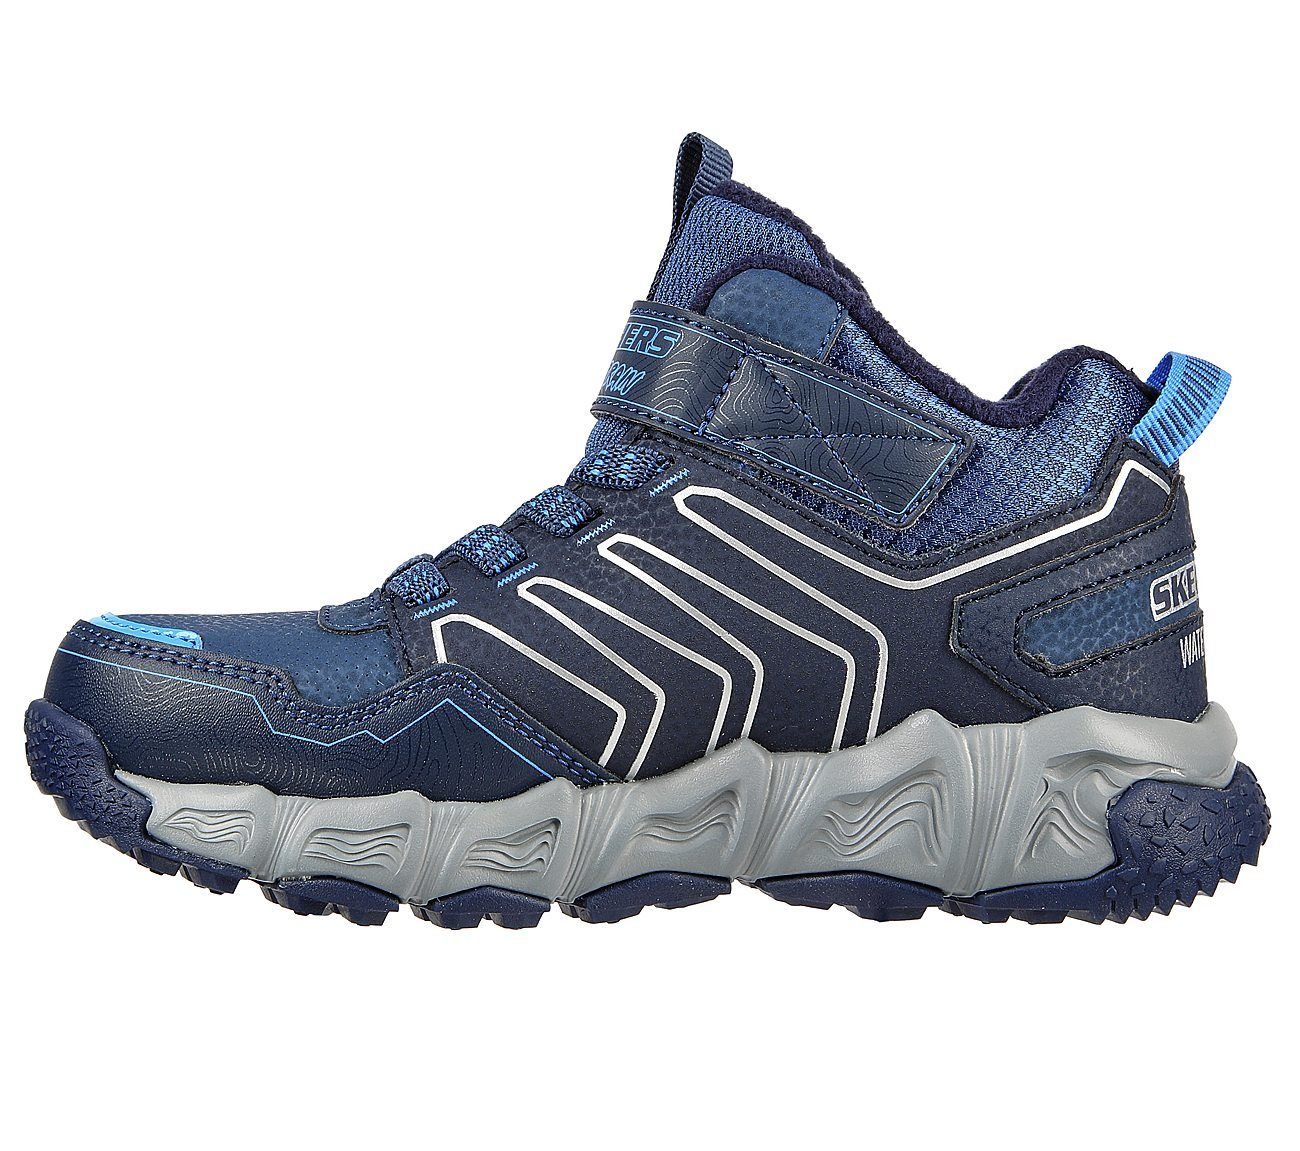 Skechers navy/blue Combex Sneaker